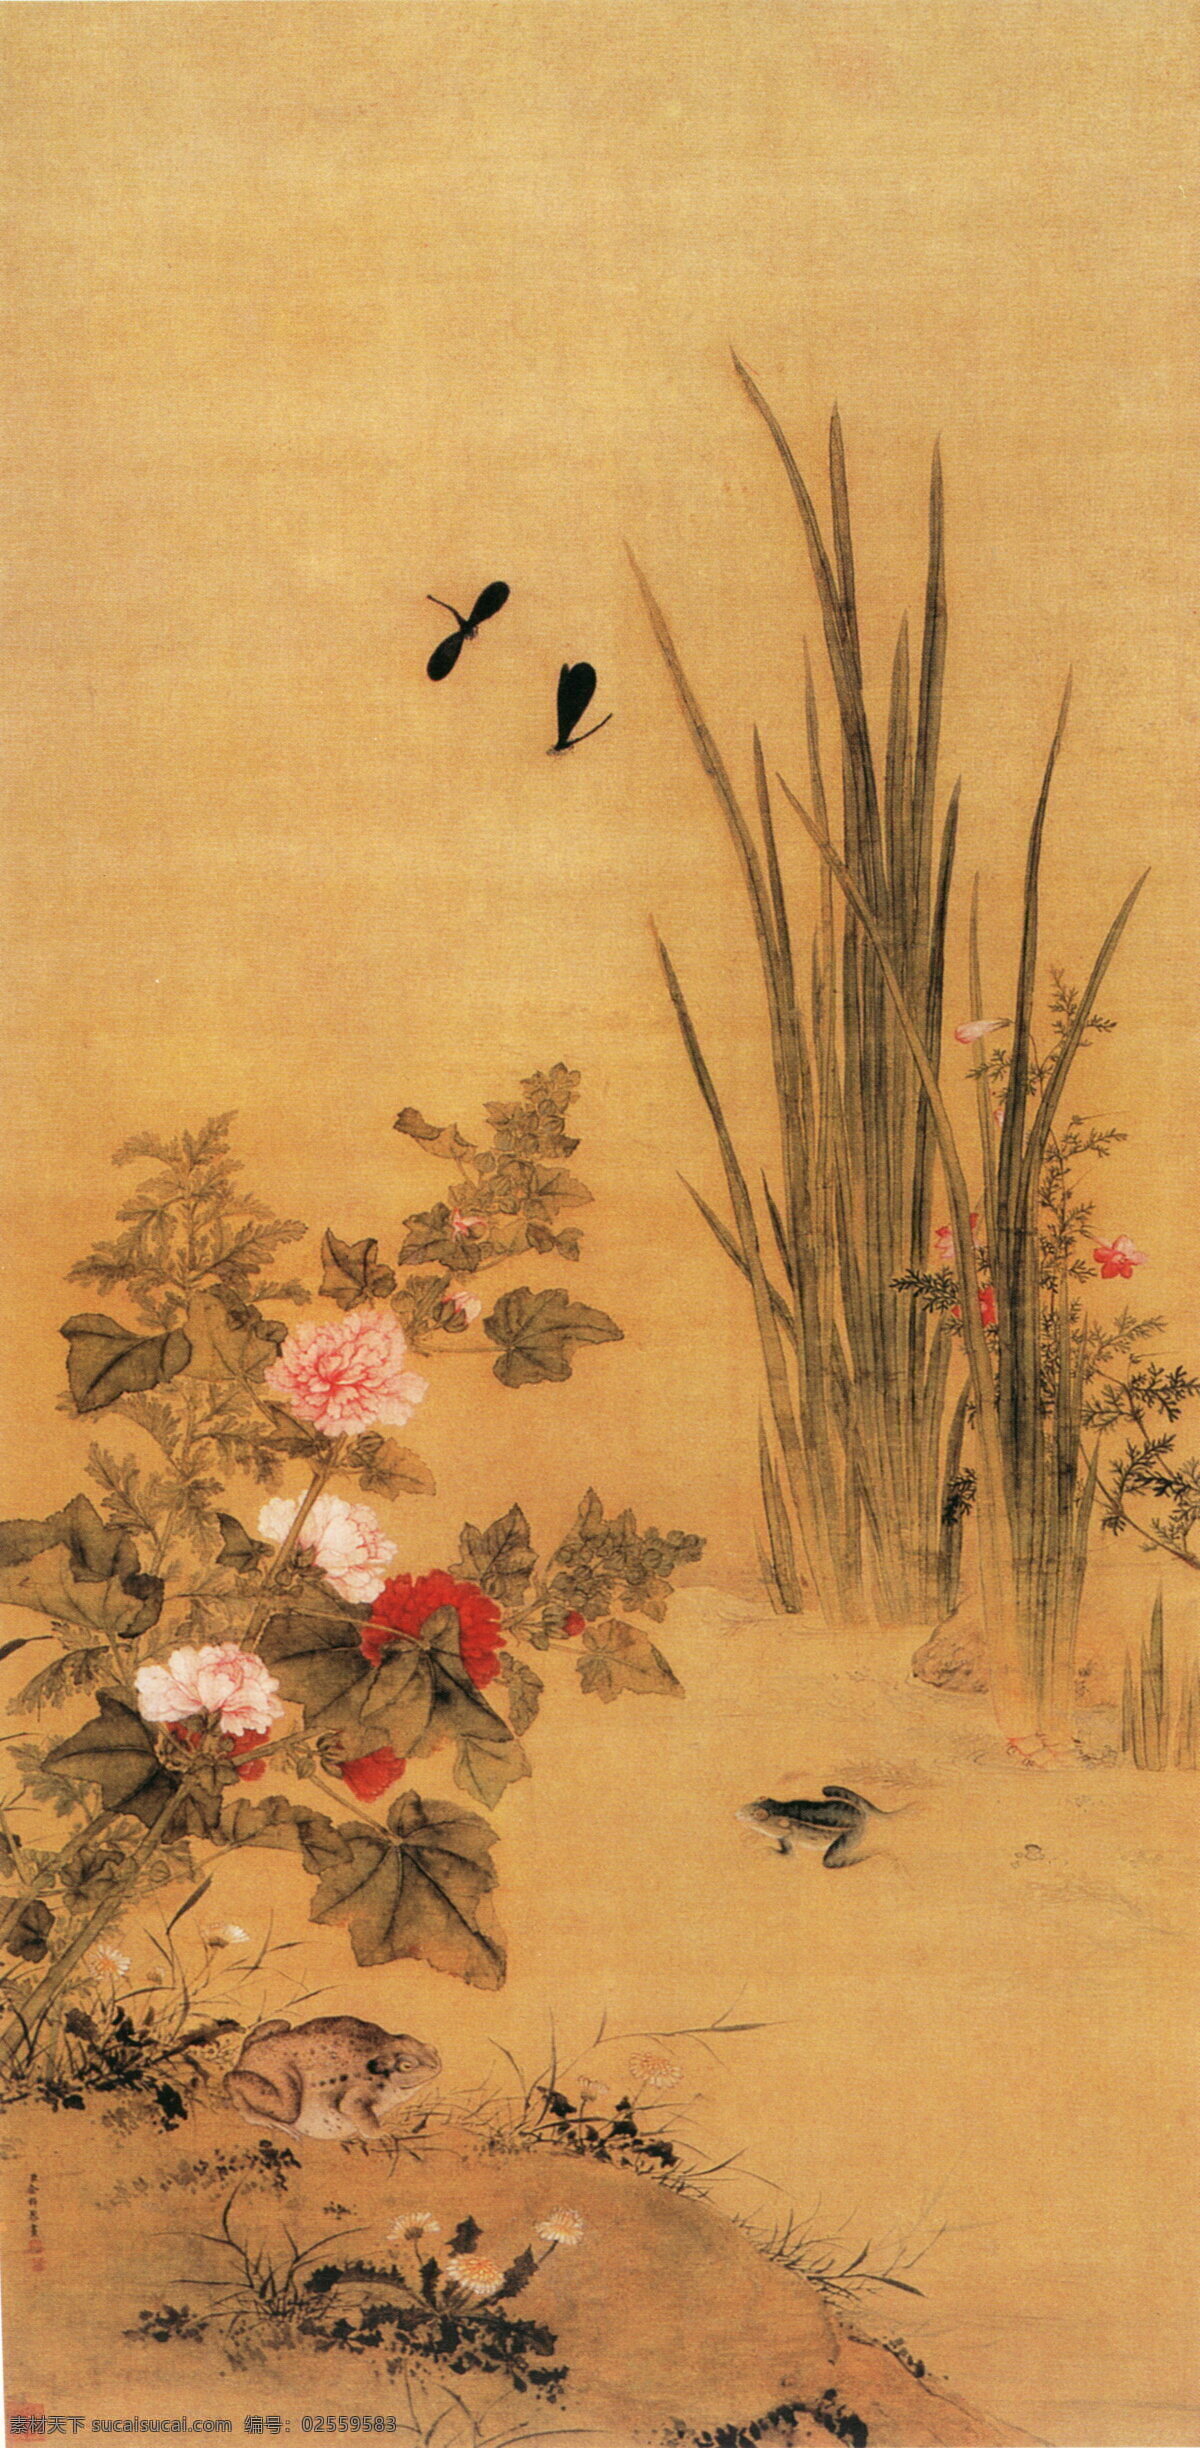 花卉 植物 青蛙 水墨画 名画 水墨花卉植物 国画 中国画 绘画艺术 装饰画 挂画 书画文字 文化艺术